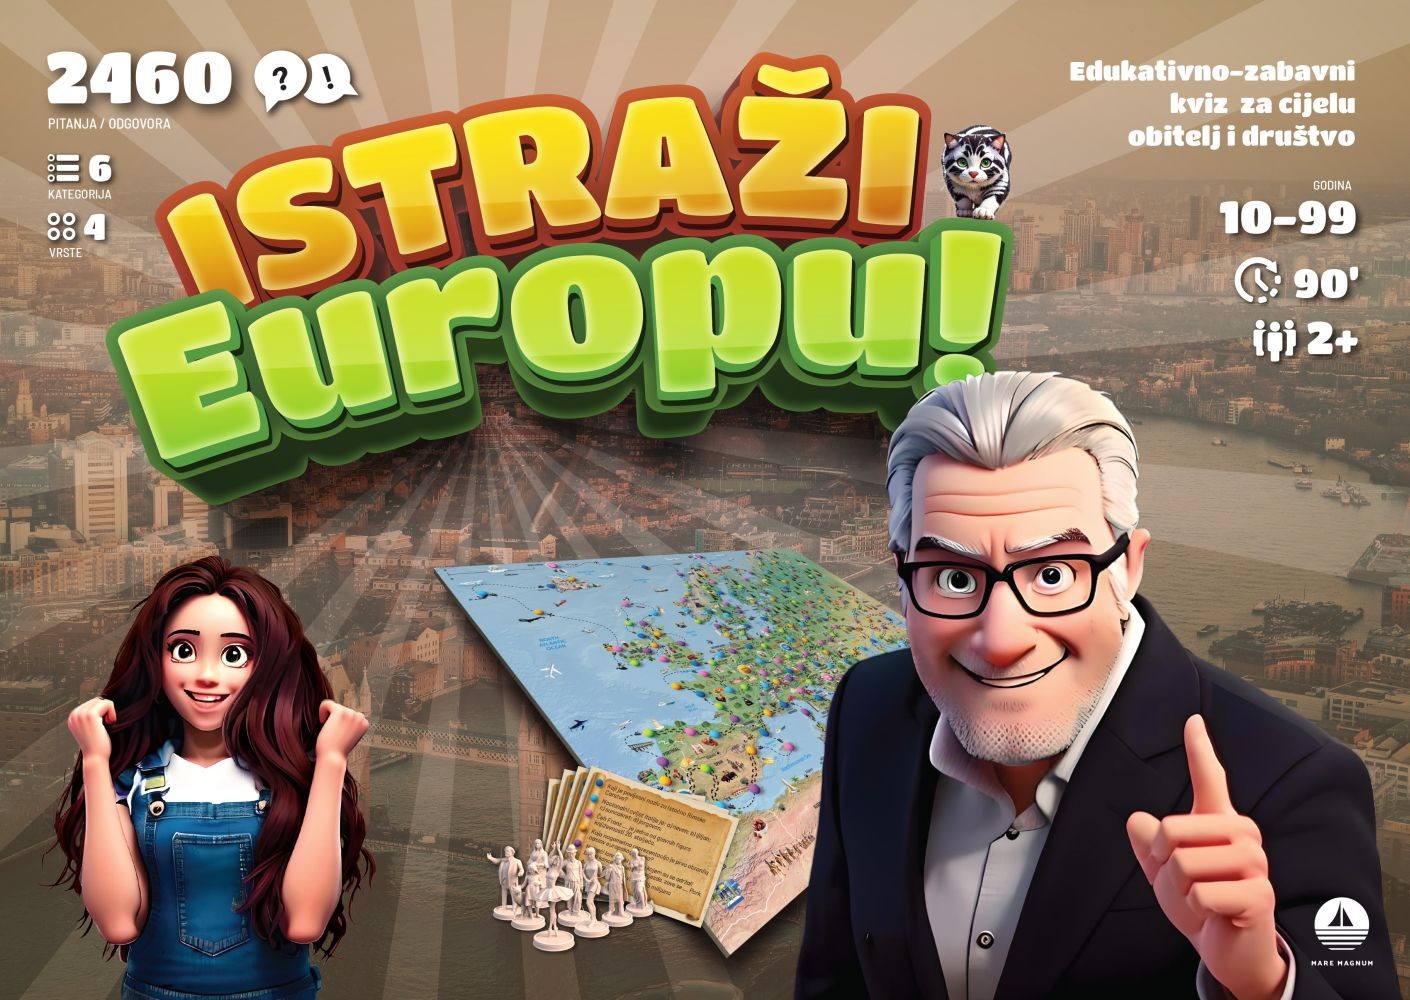 Istraži Europu! društvena igra